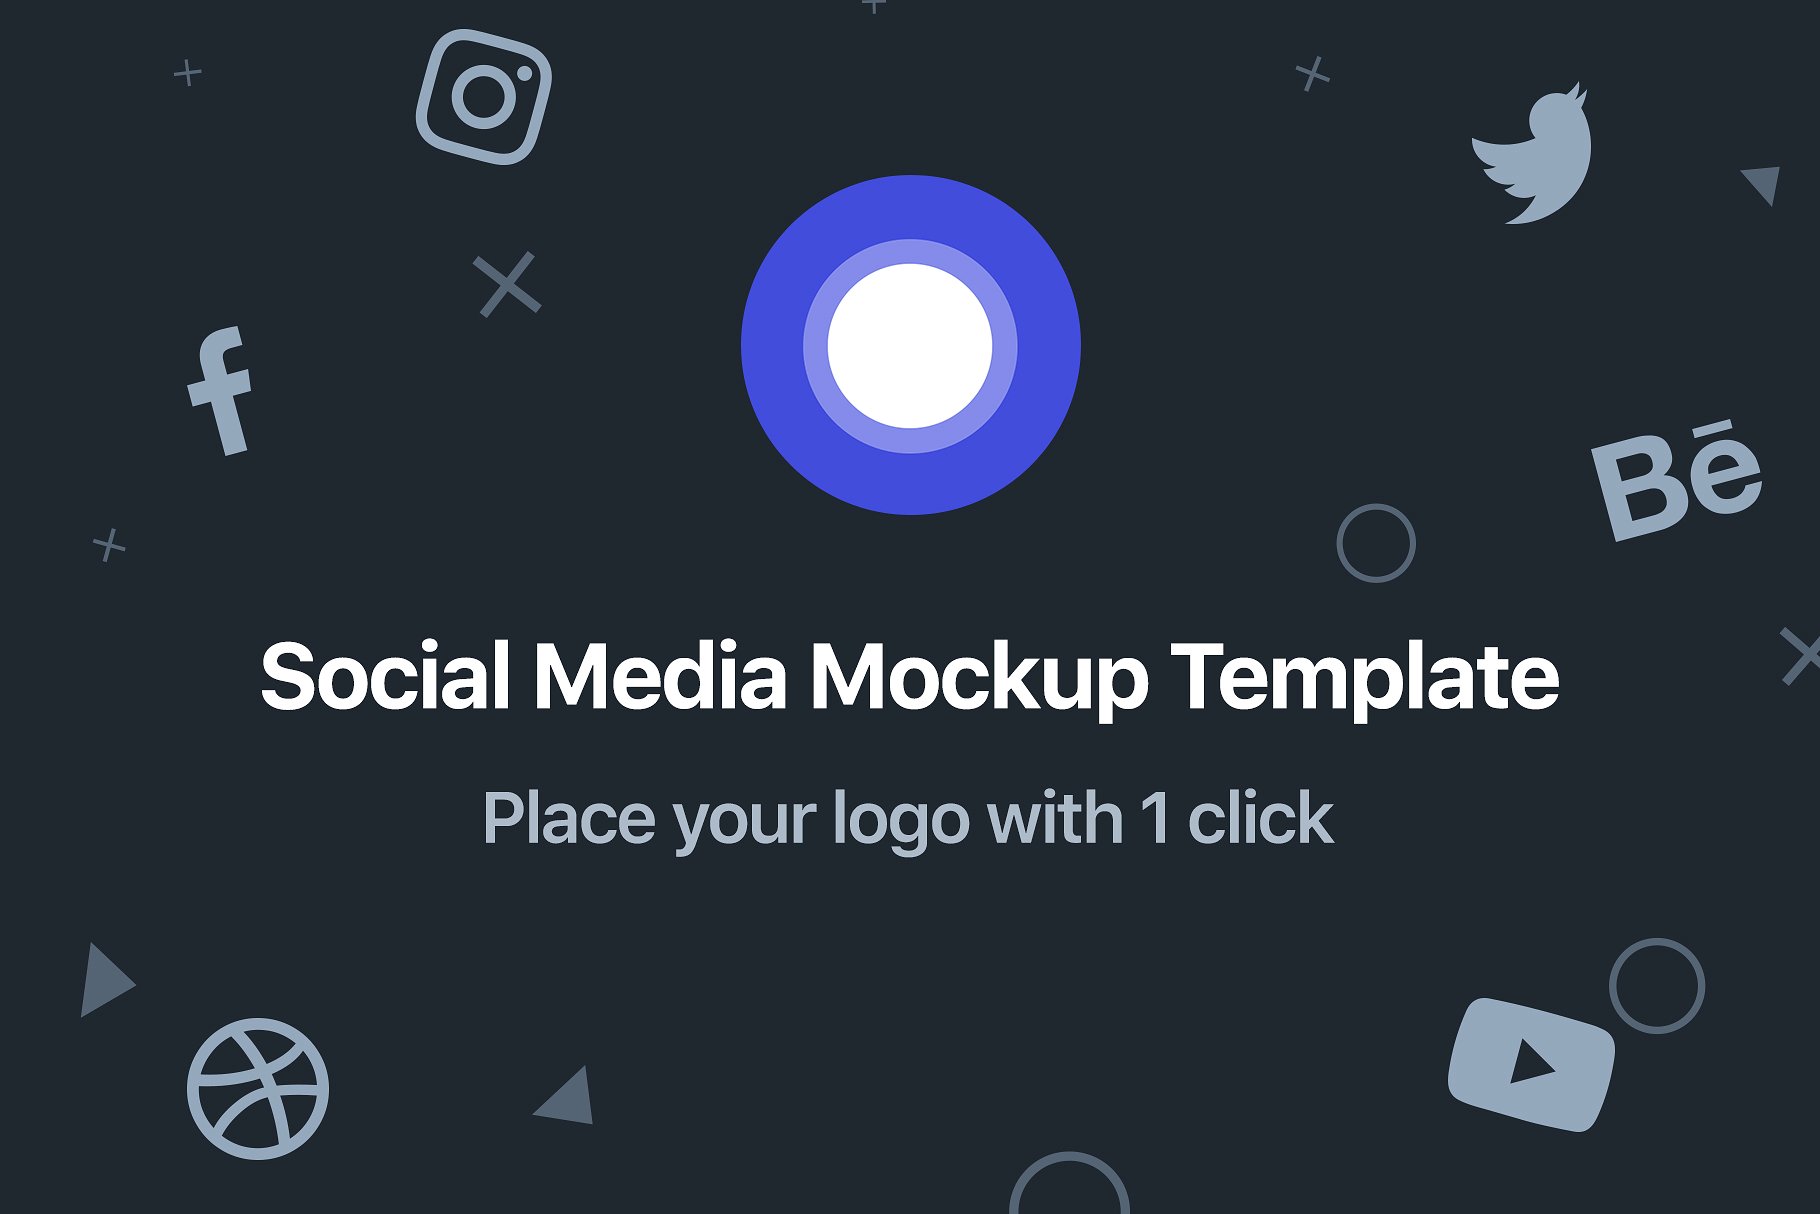 A social media mockup templates